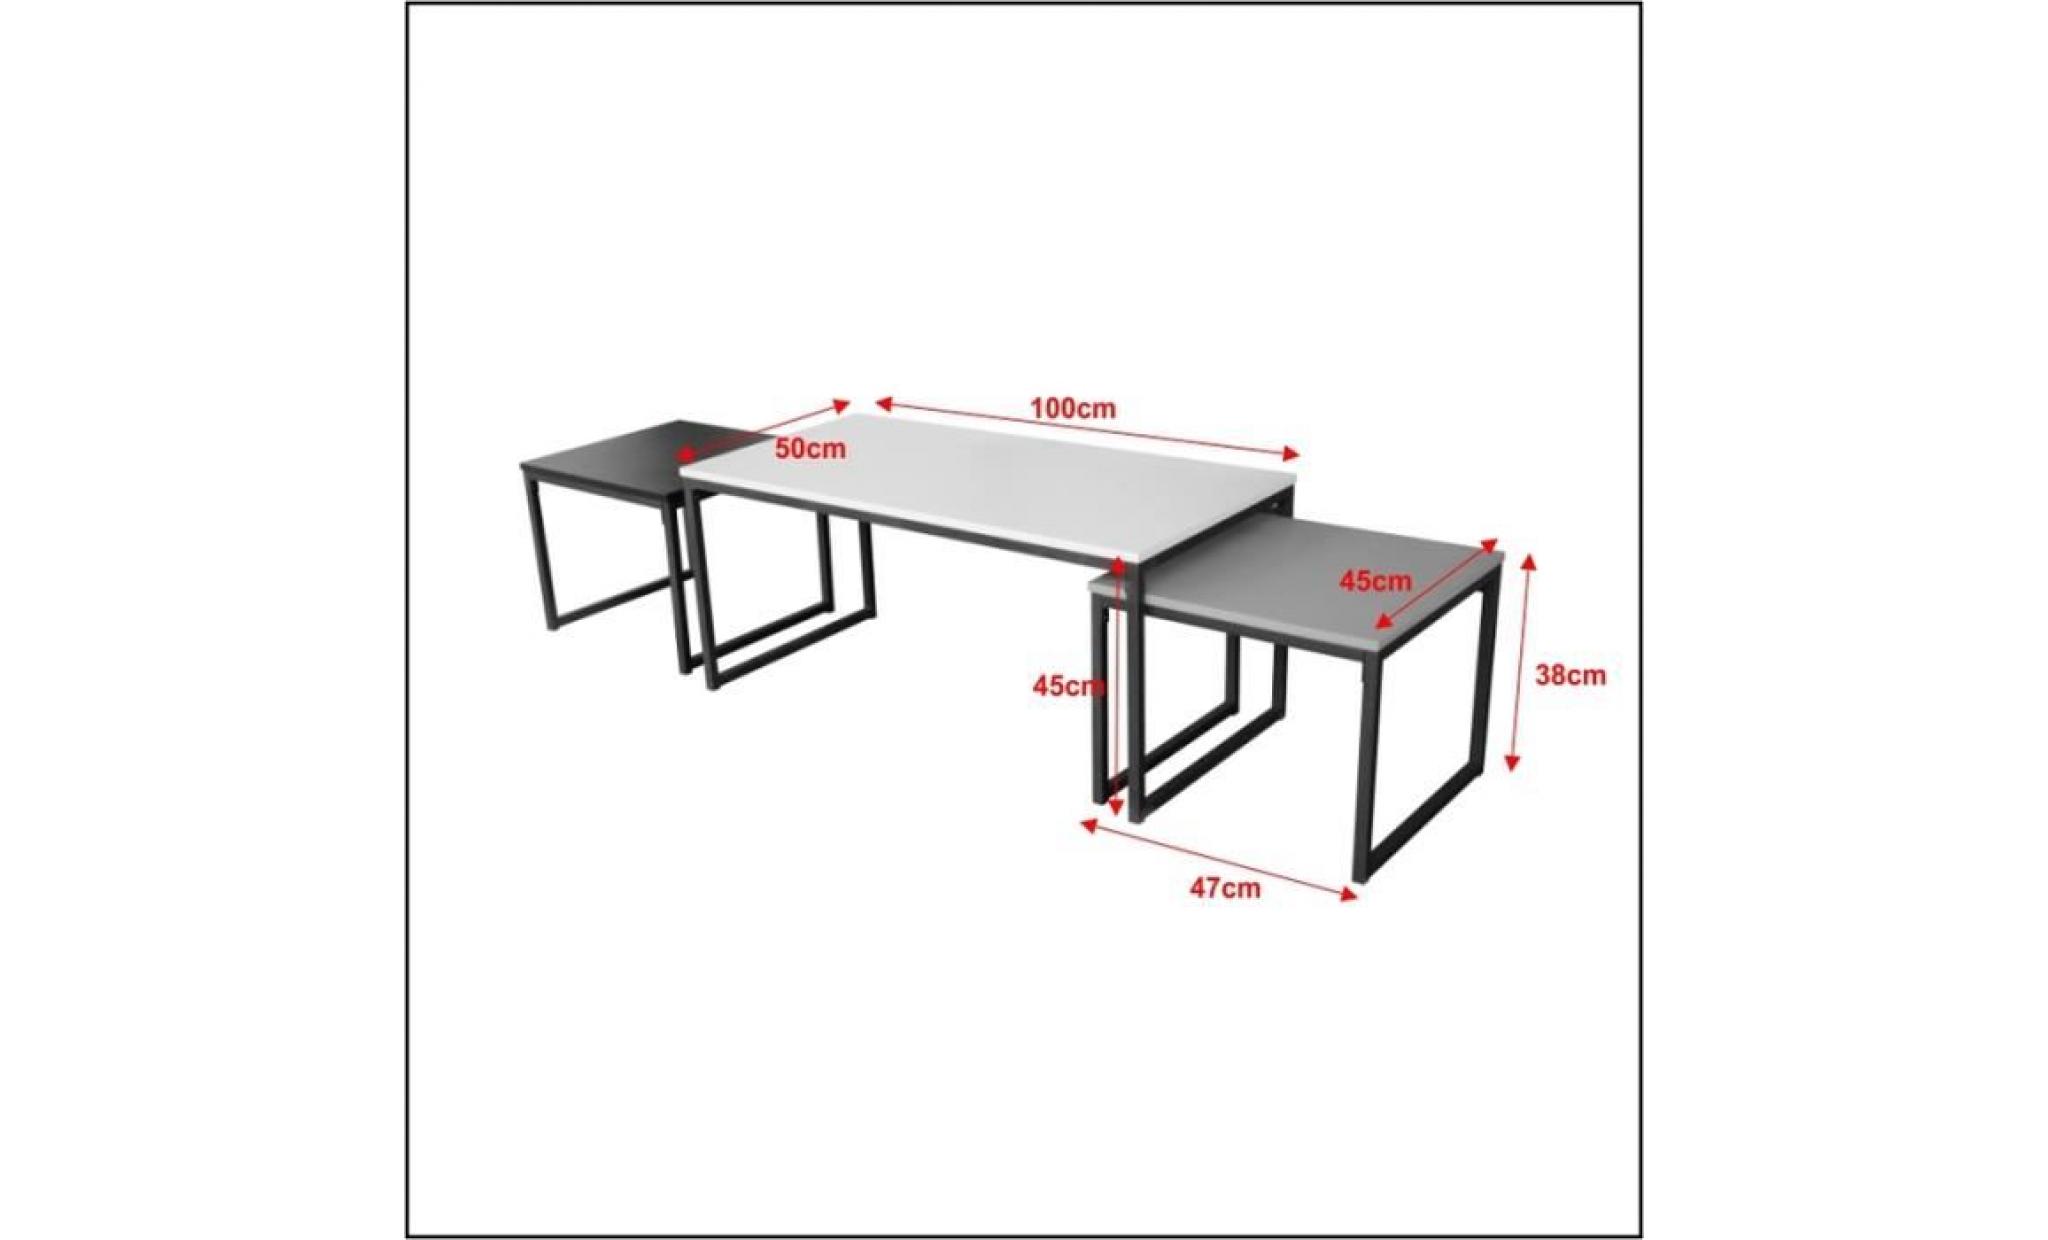 ensemble de tables basses   monochrome   3 tables   couleurs : blanche, noire, grise   style industriel   style scandi pas cher